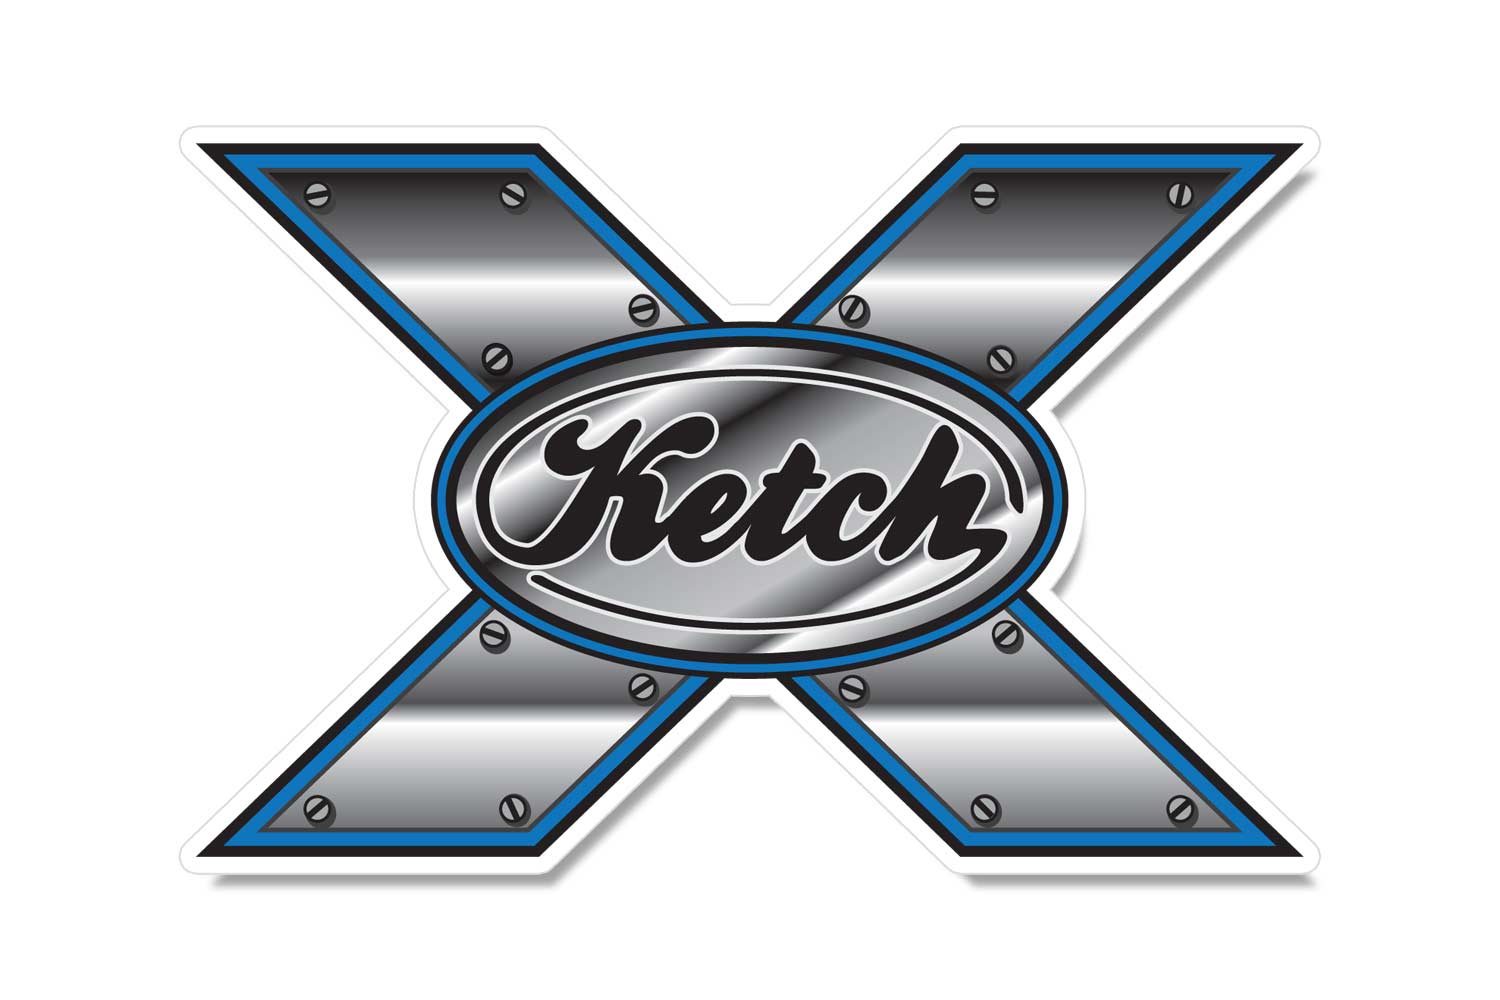 Ketch X logo sticker